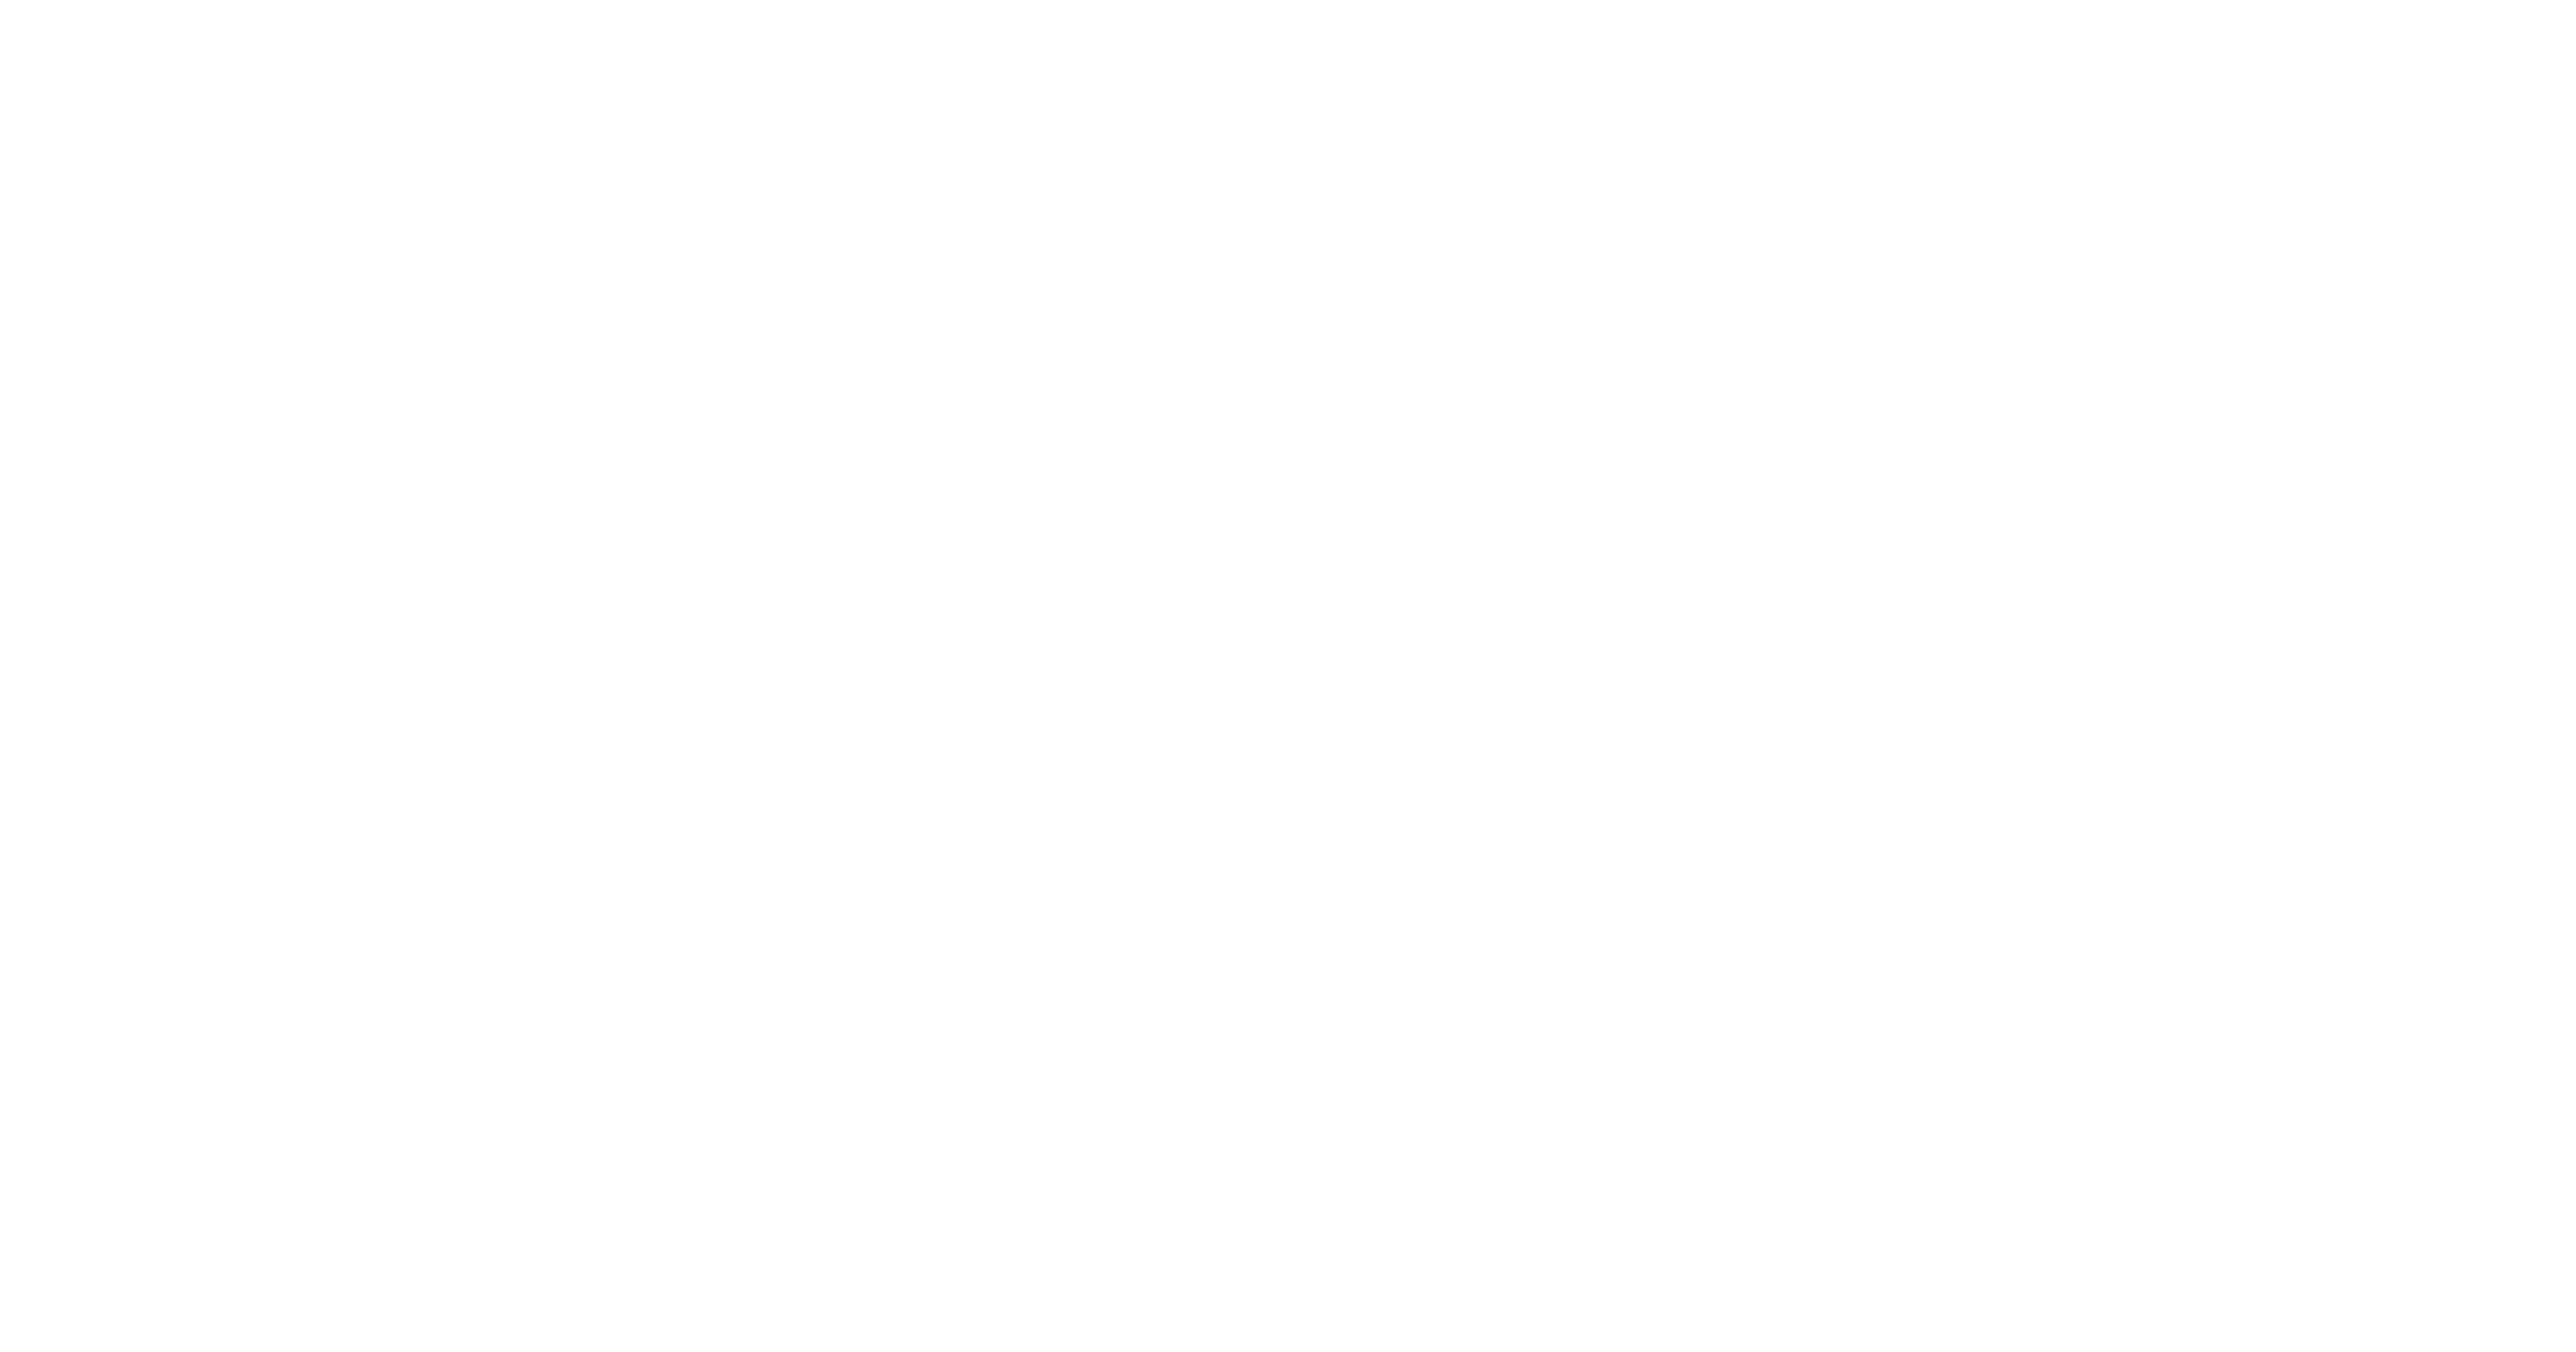 IndyCar Logo - IndyCar Ministry